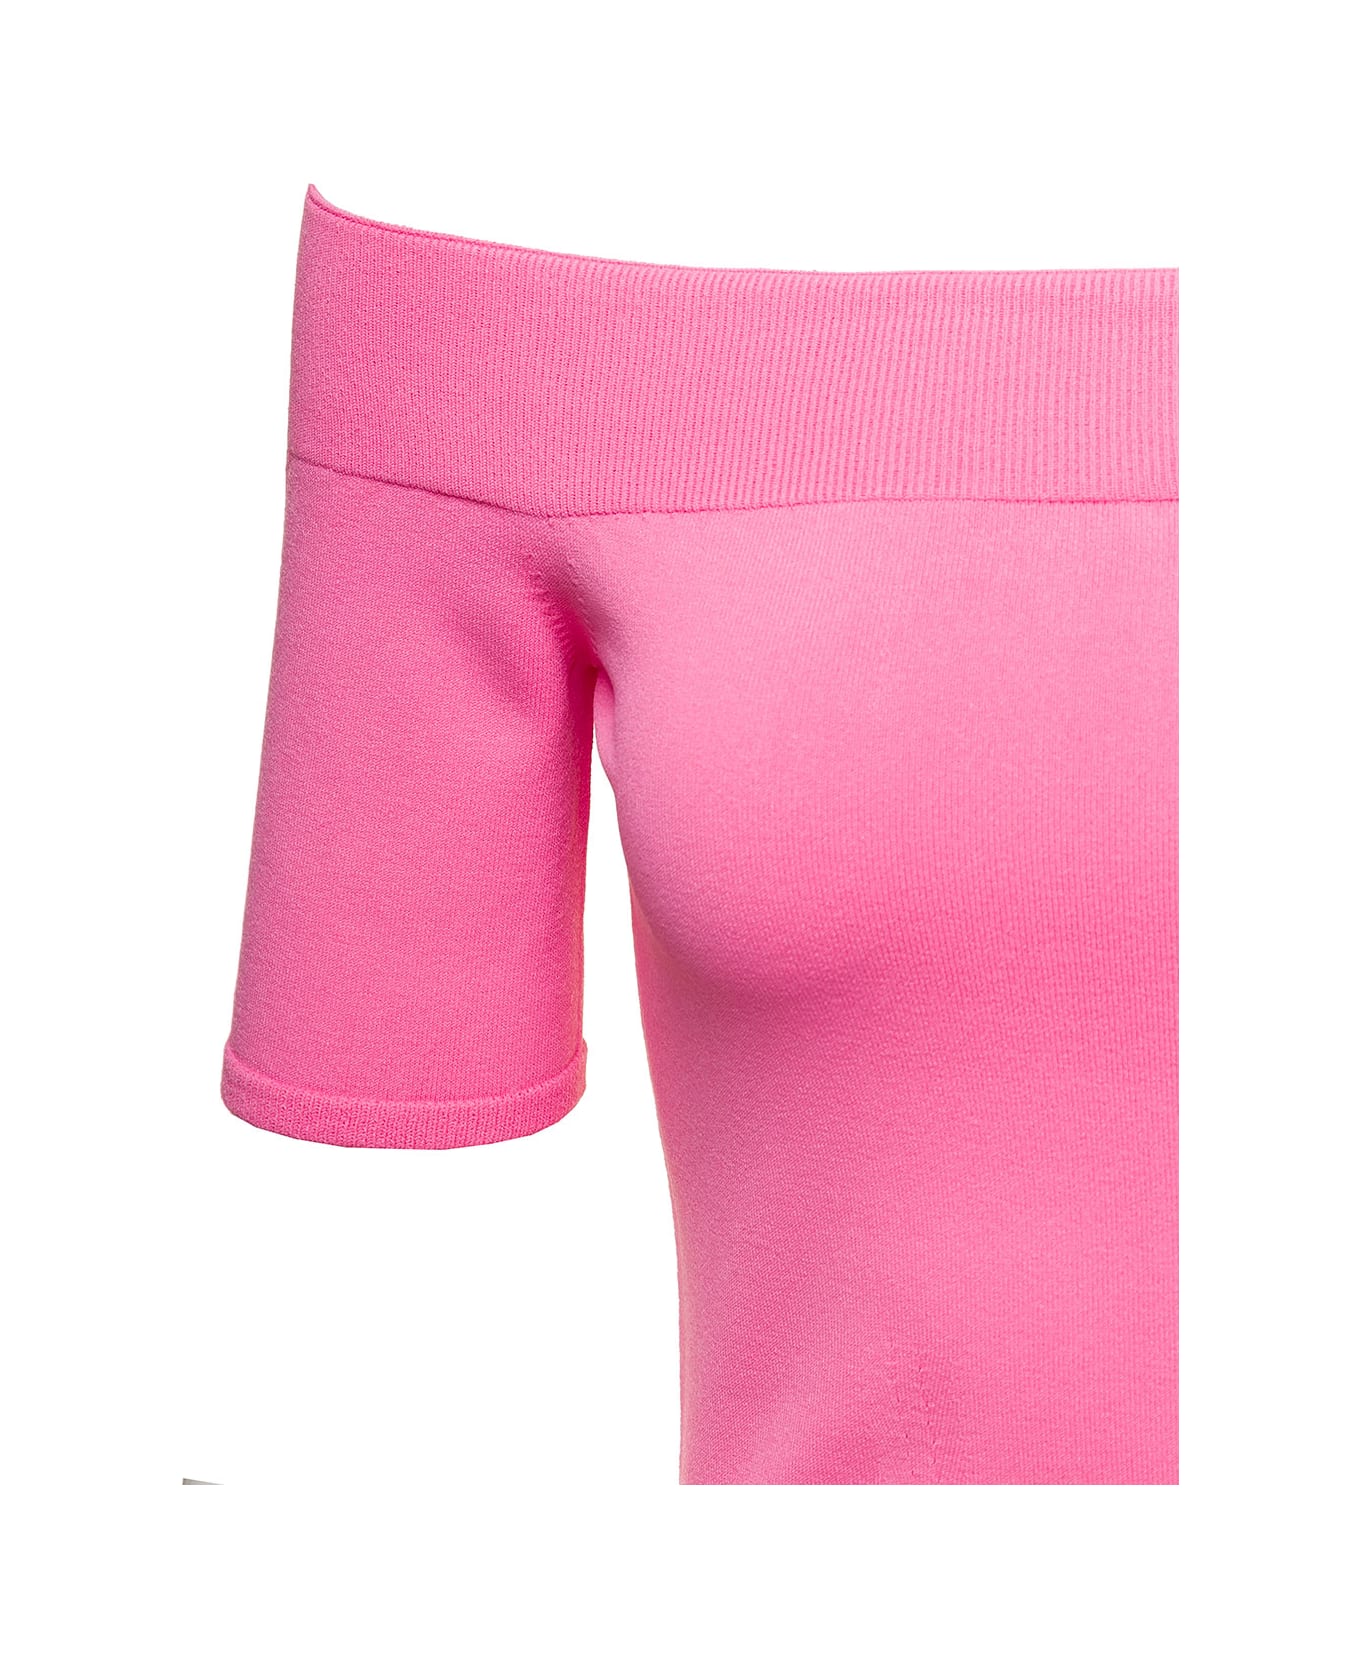 Alexander McQueen Pink Off-the-shoulders Top In Viscose Blend Woman - Pink